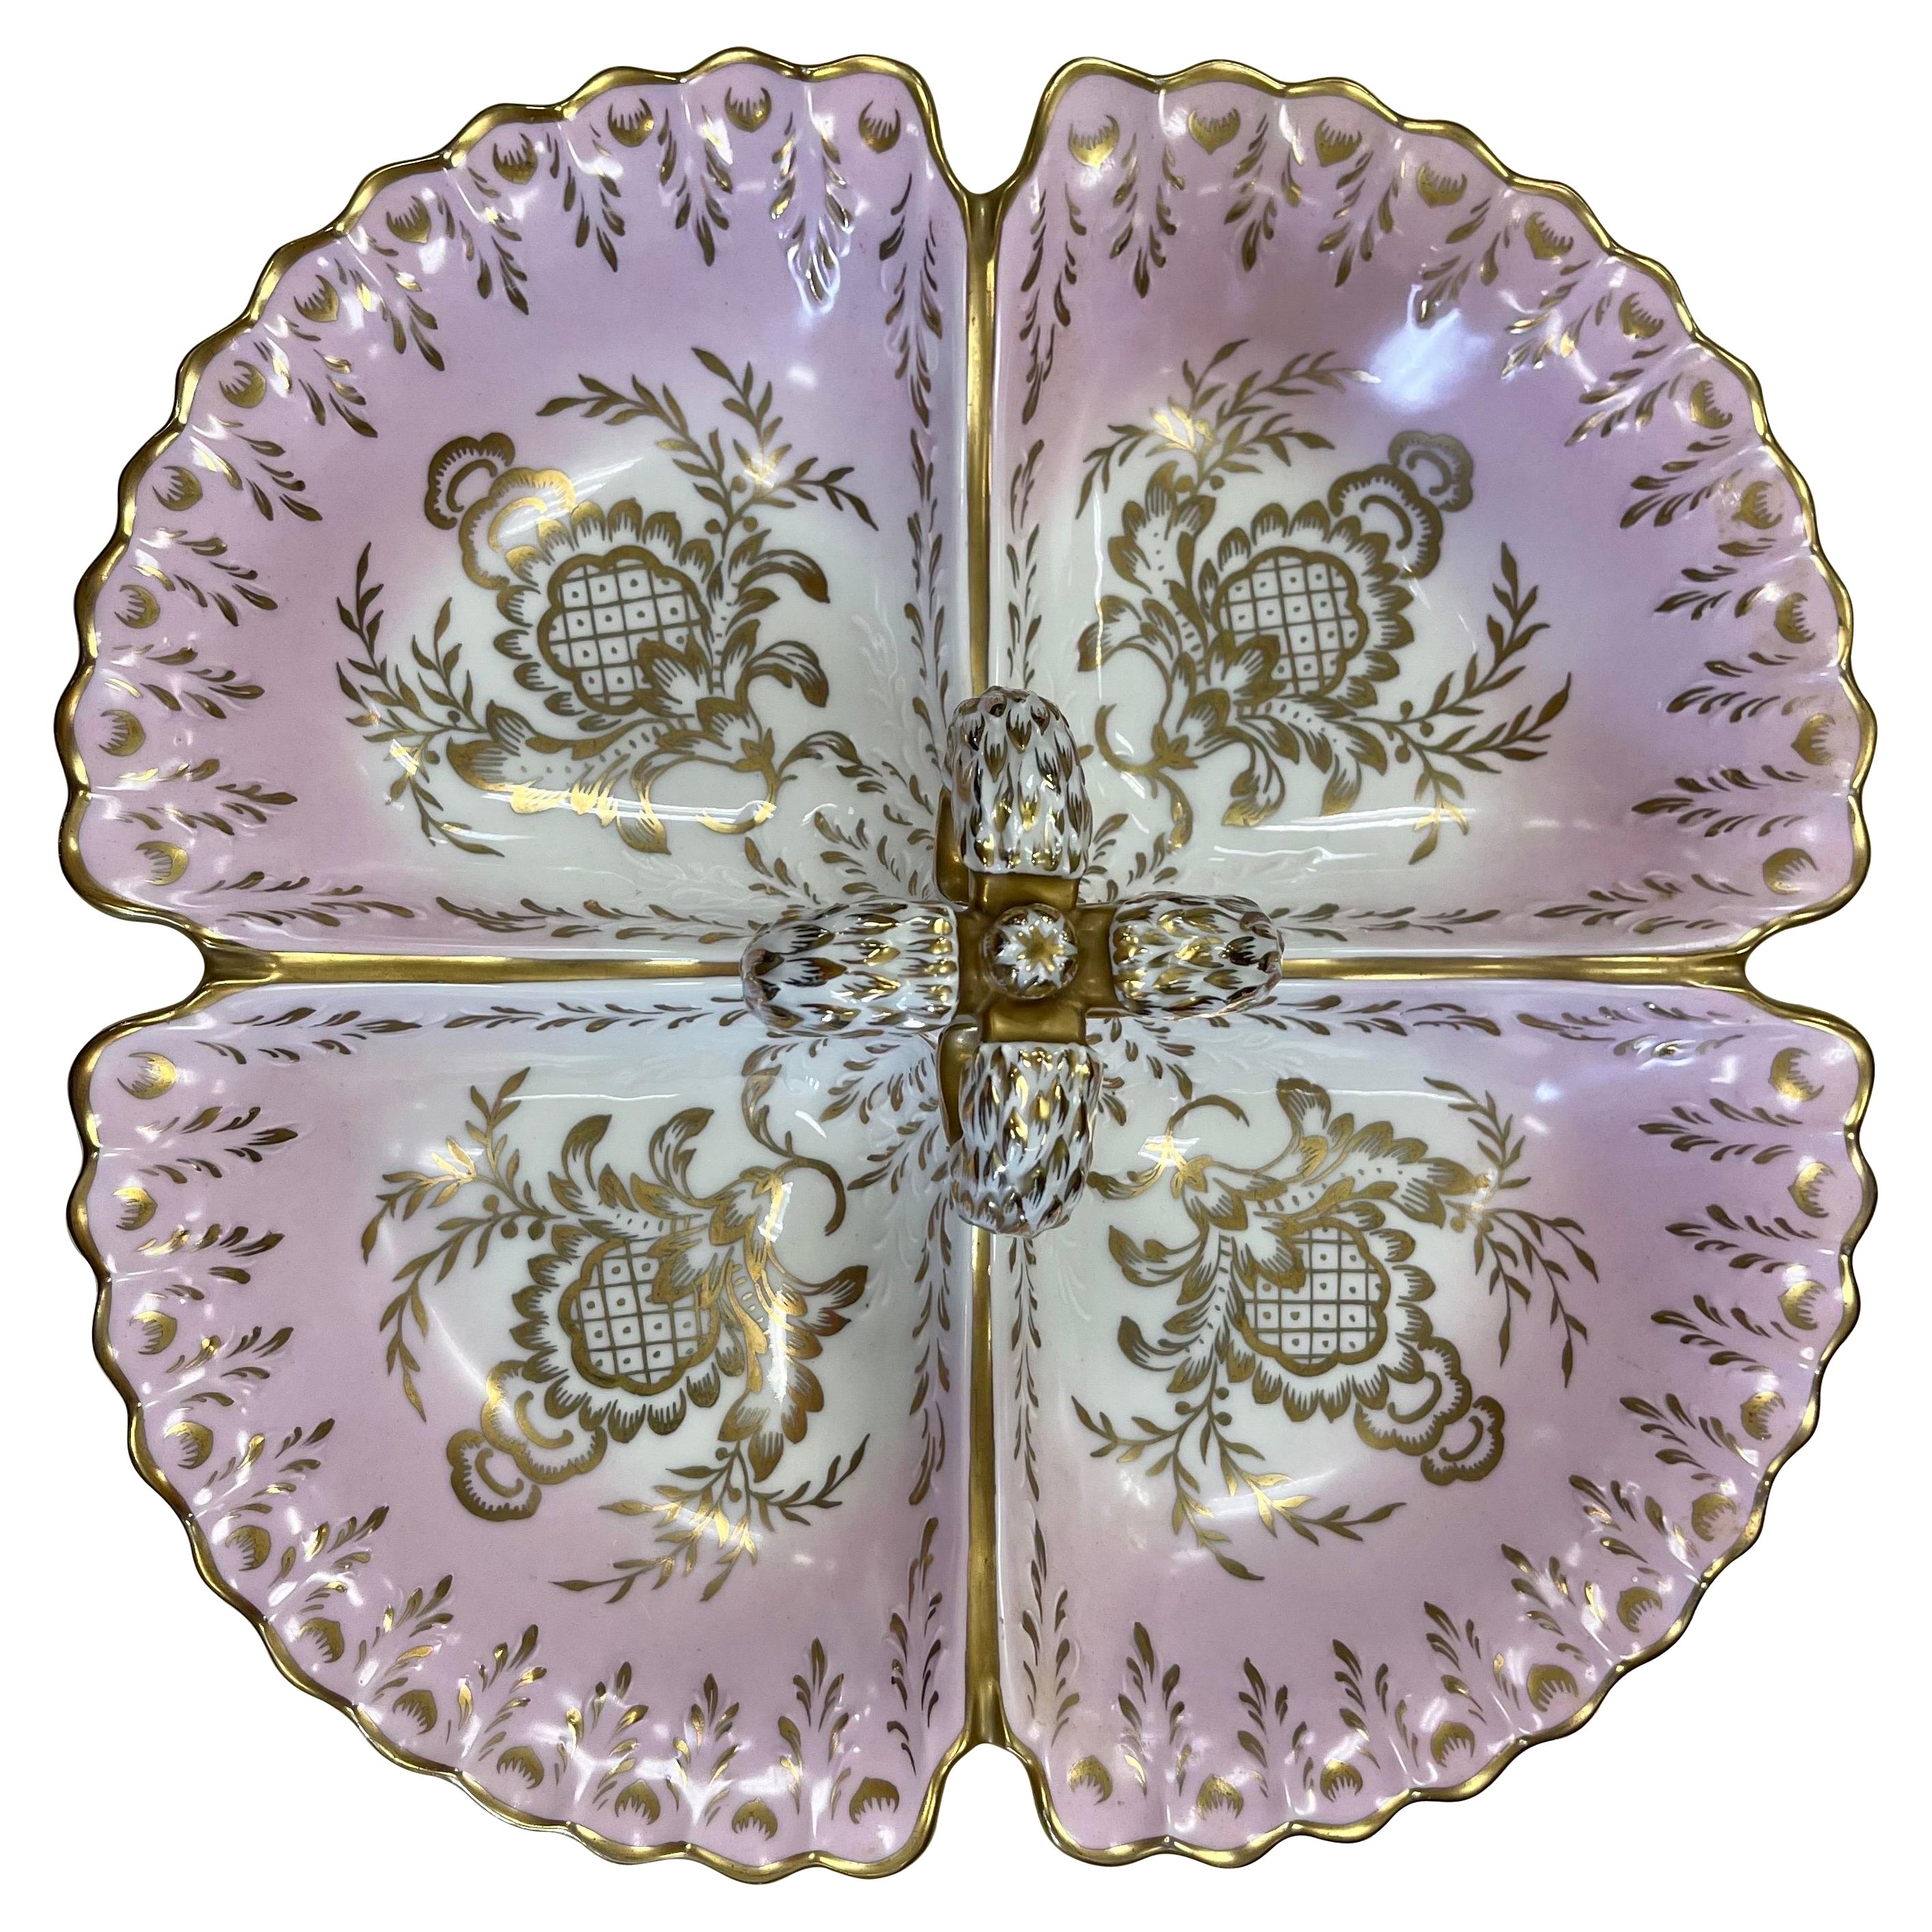 1940's Porcelain Pink and Gold Porcelain Divided Server Dish Platter For Sale